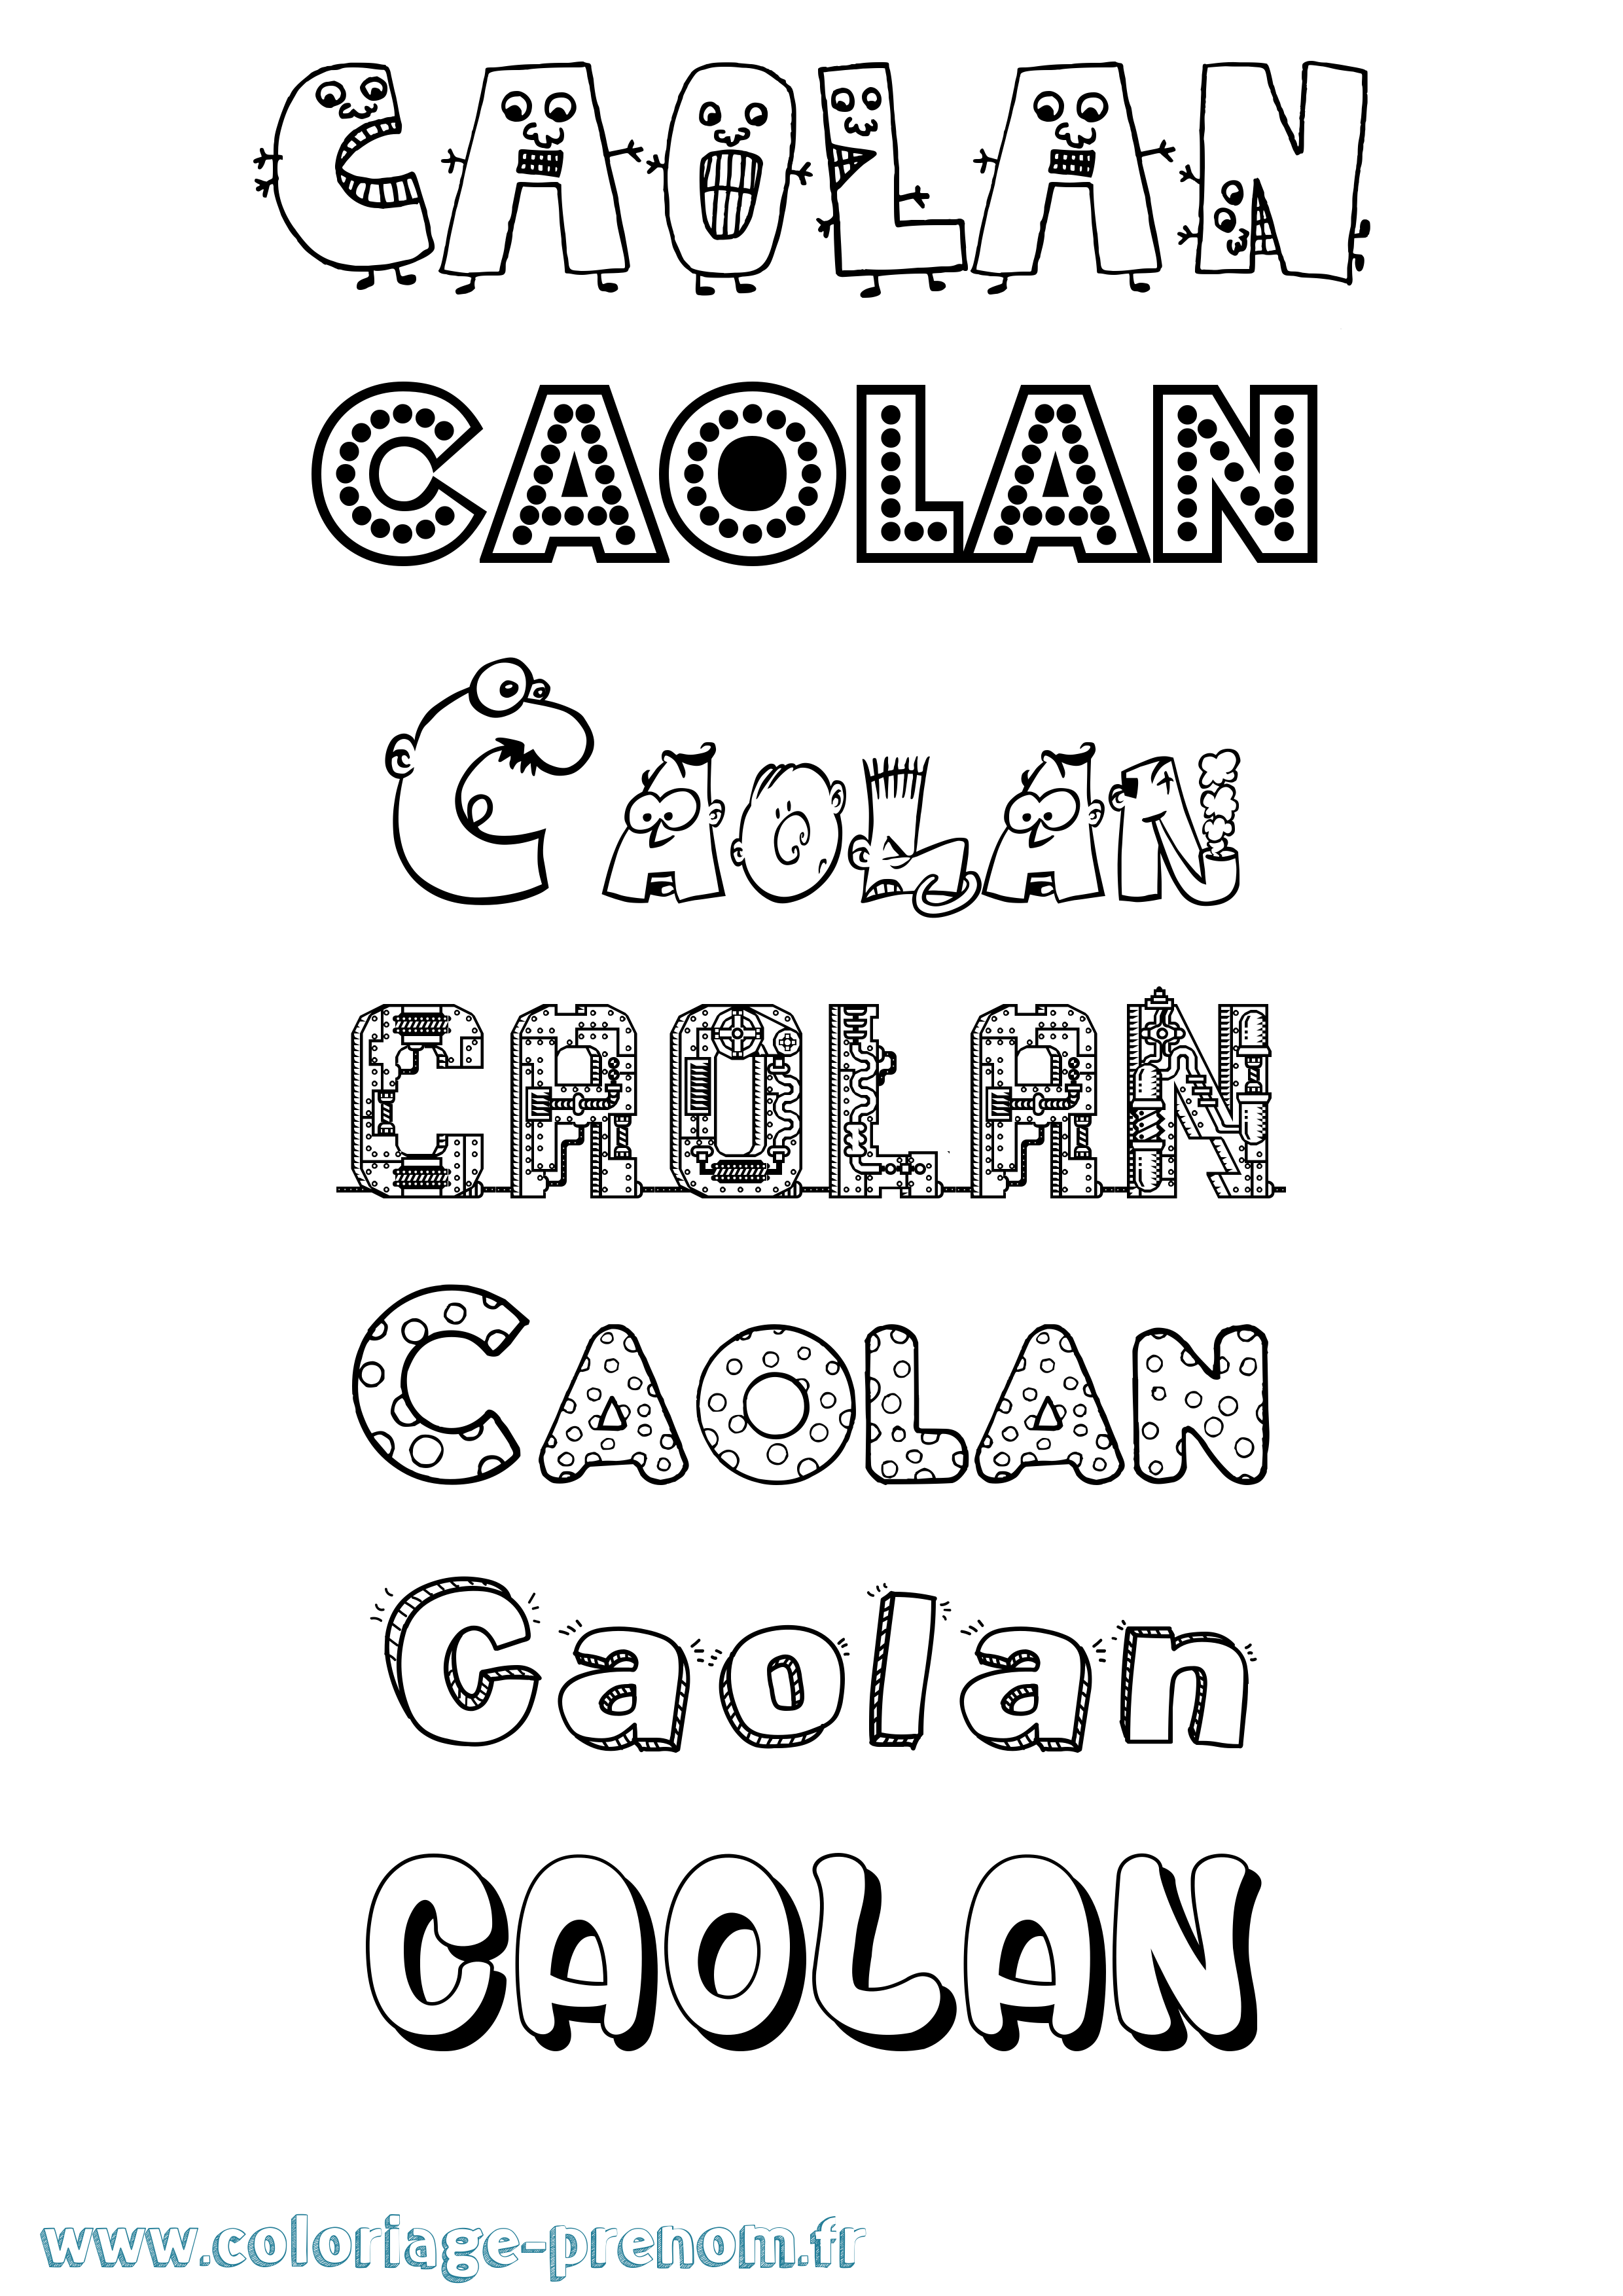 Coloriage prénom Caolan Fun